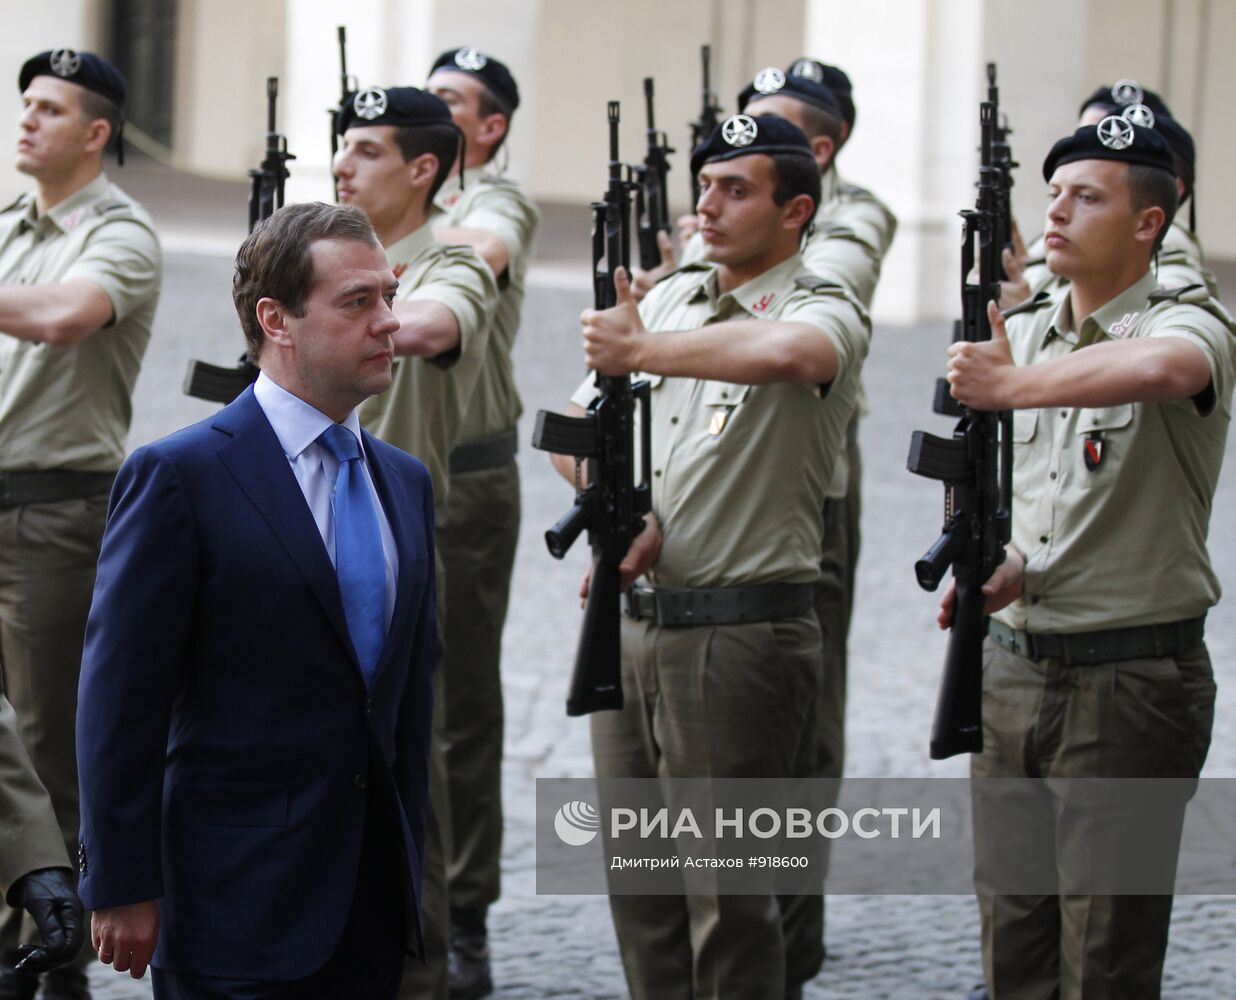 Дмитрий Медведев прибыл с рабочим визитом в Италию